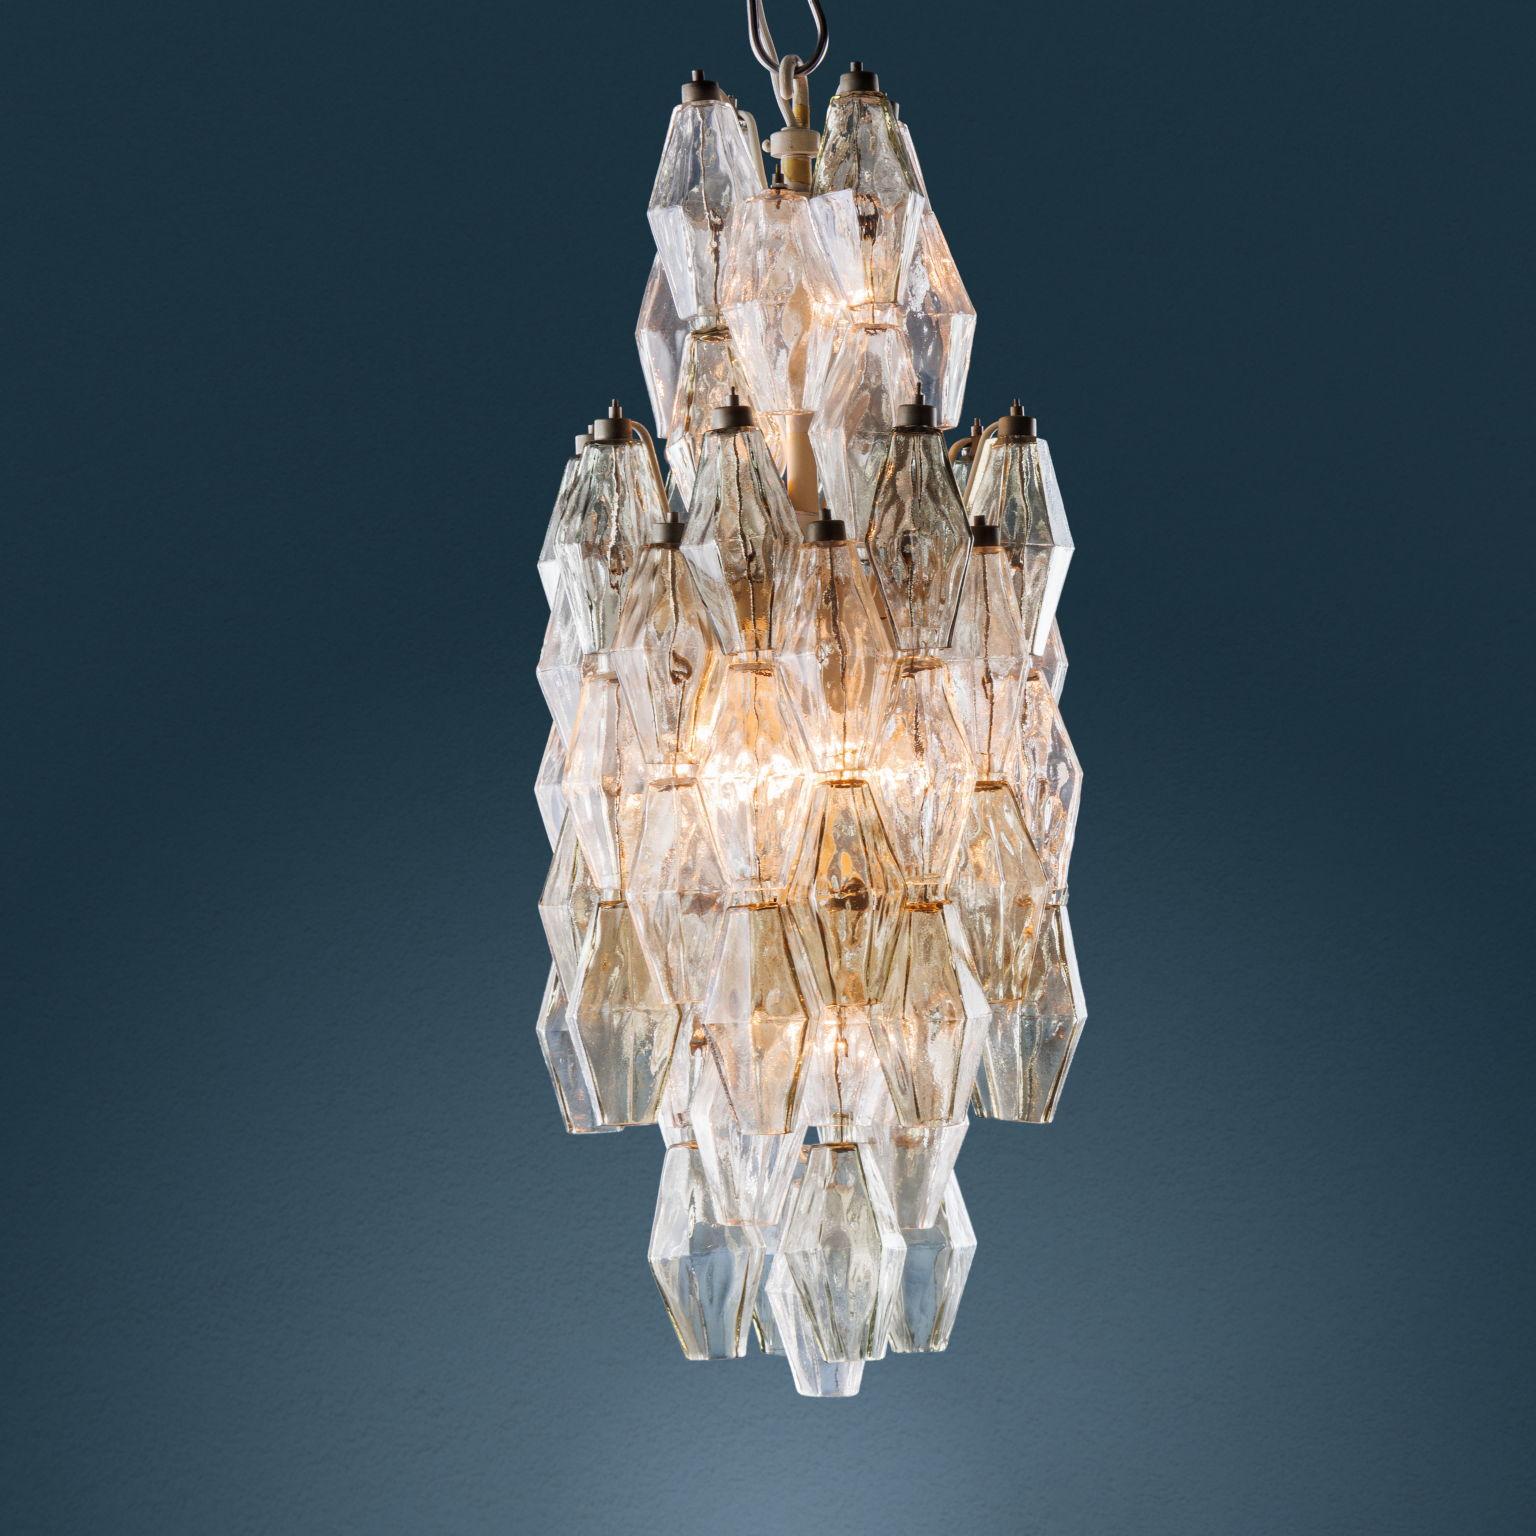 Carlo Scarpa for Venini 'Poliedri' lamp in murano glass